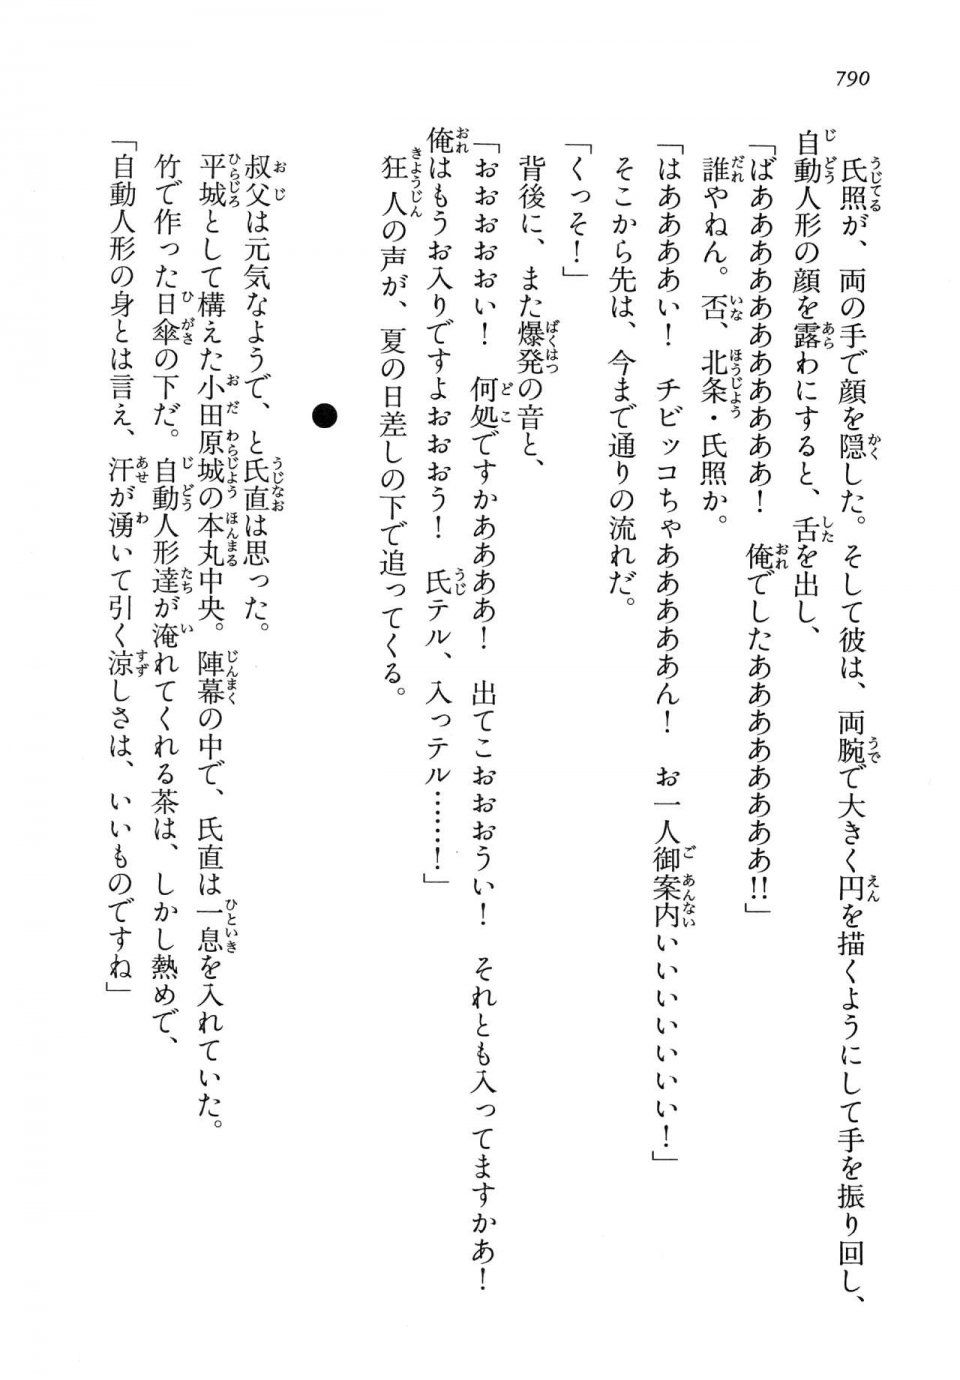 Kyoukai Senjou no Horizon LN Vol 14(6B) - Photo #790